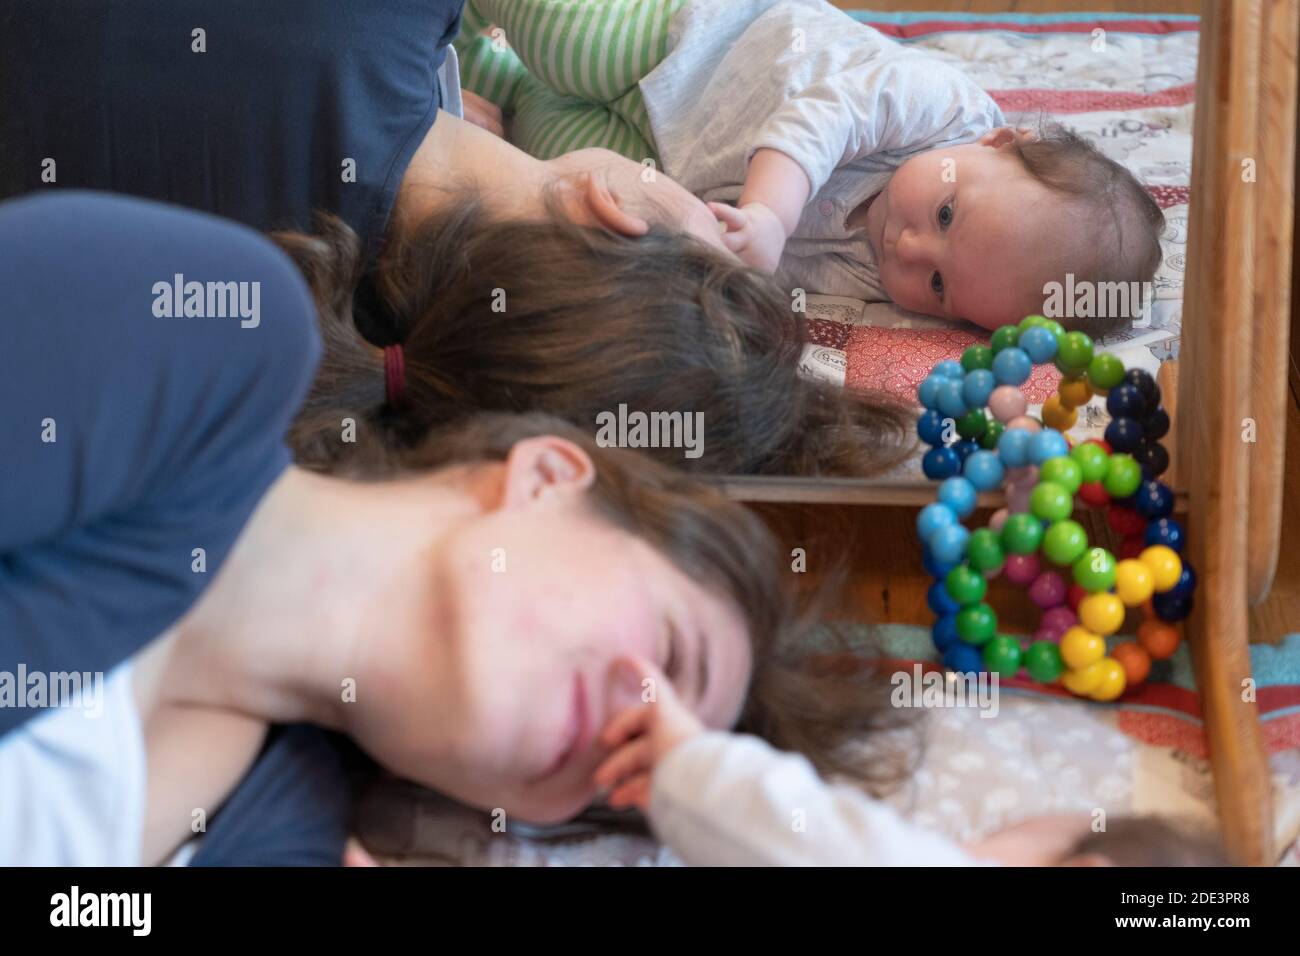 Eine Mutter, die mit ihrer 4 Monate alten Tochter interagiert und spielt, wobei beide auf einer Spielmatte mit einem Spiegel dahinter liegen, Großbritannien Stockfoto